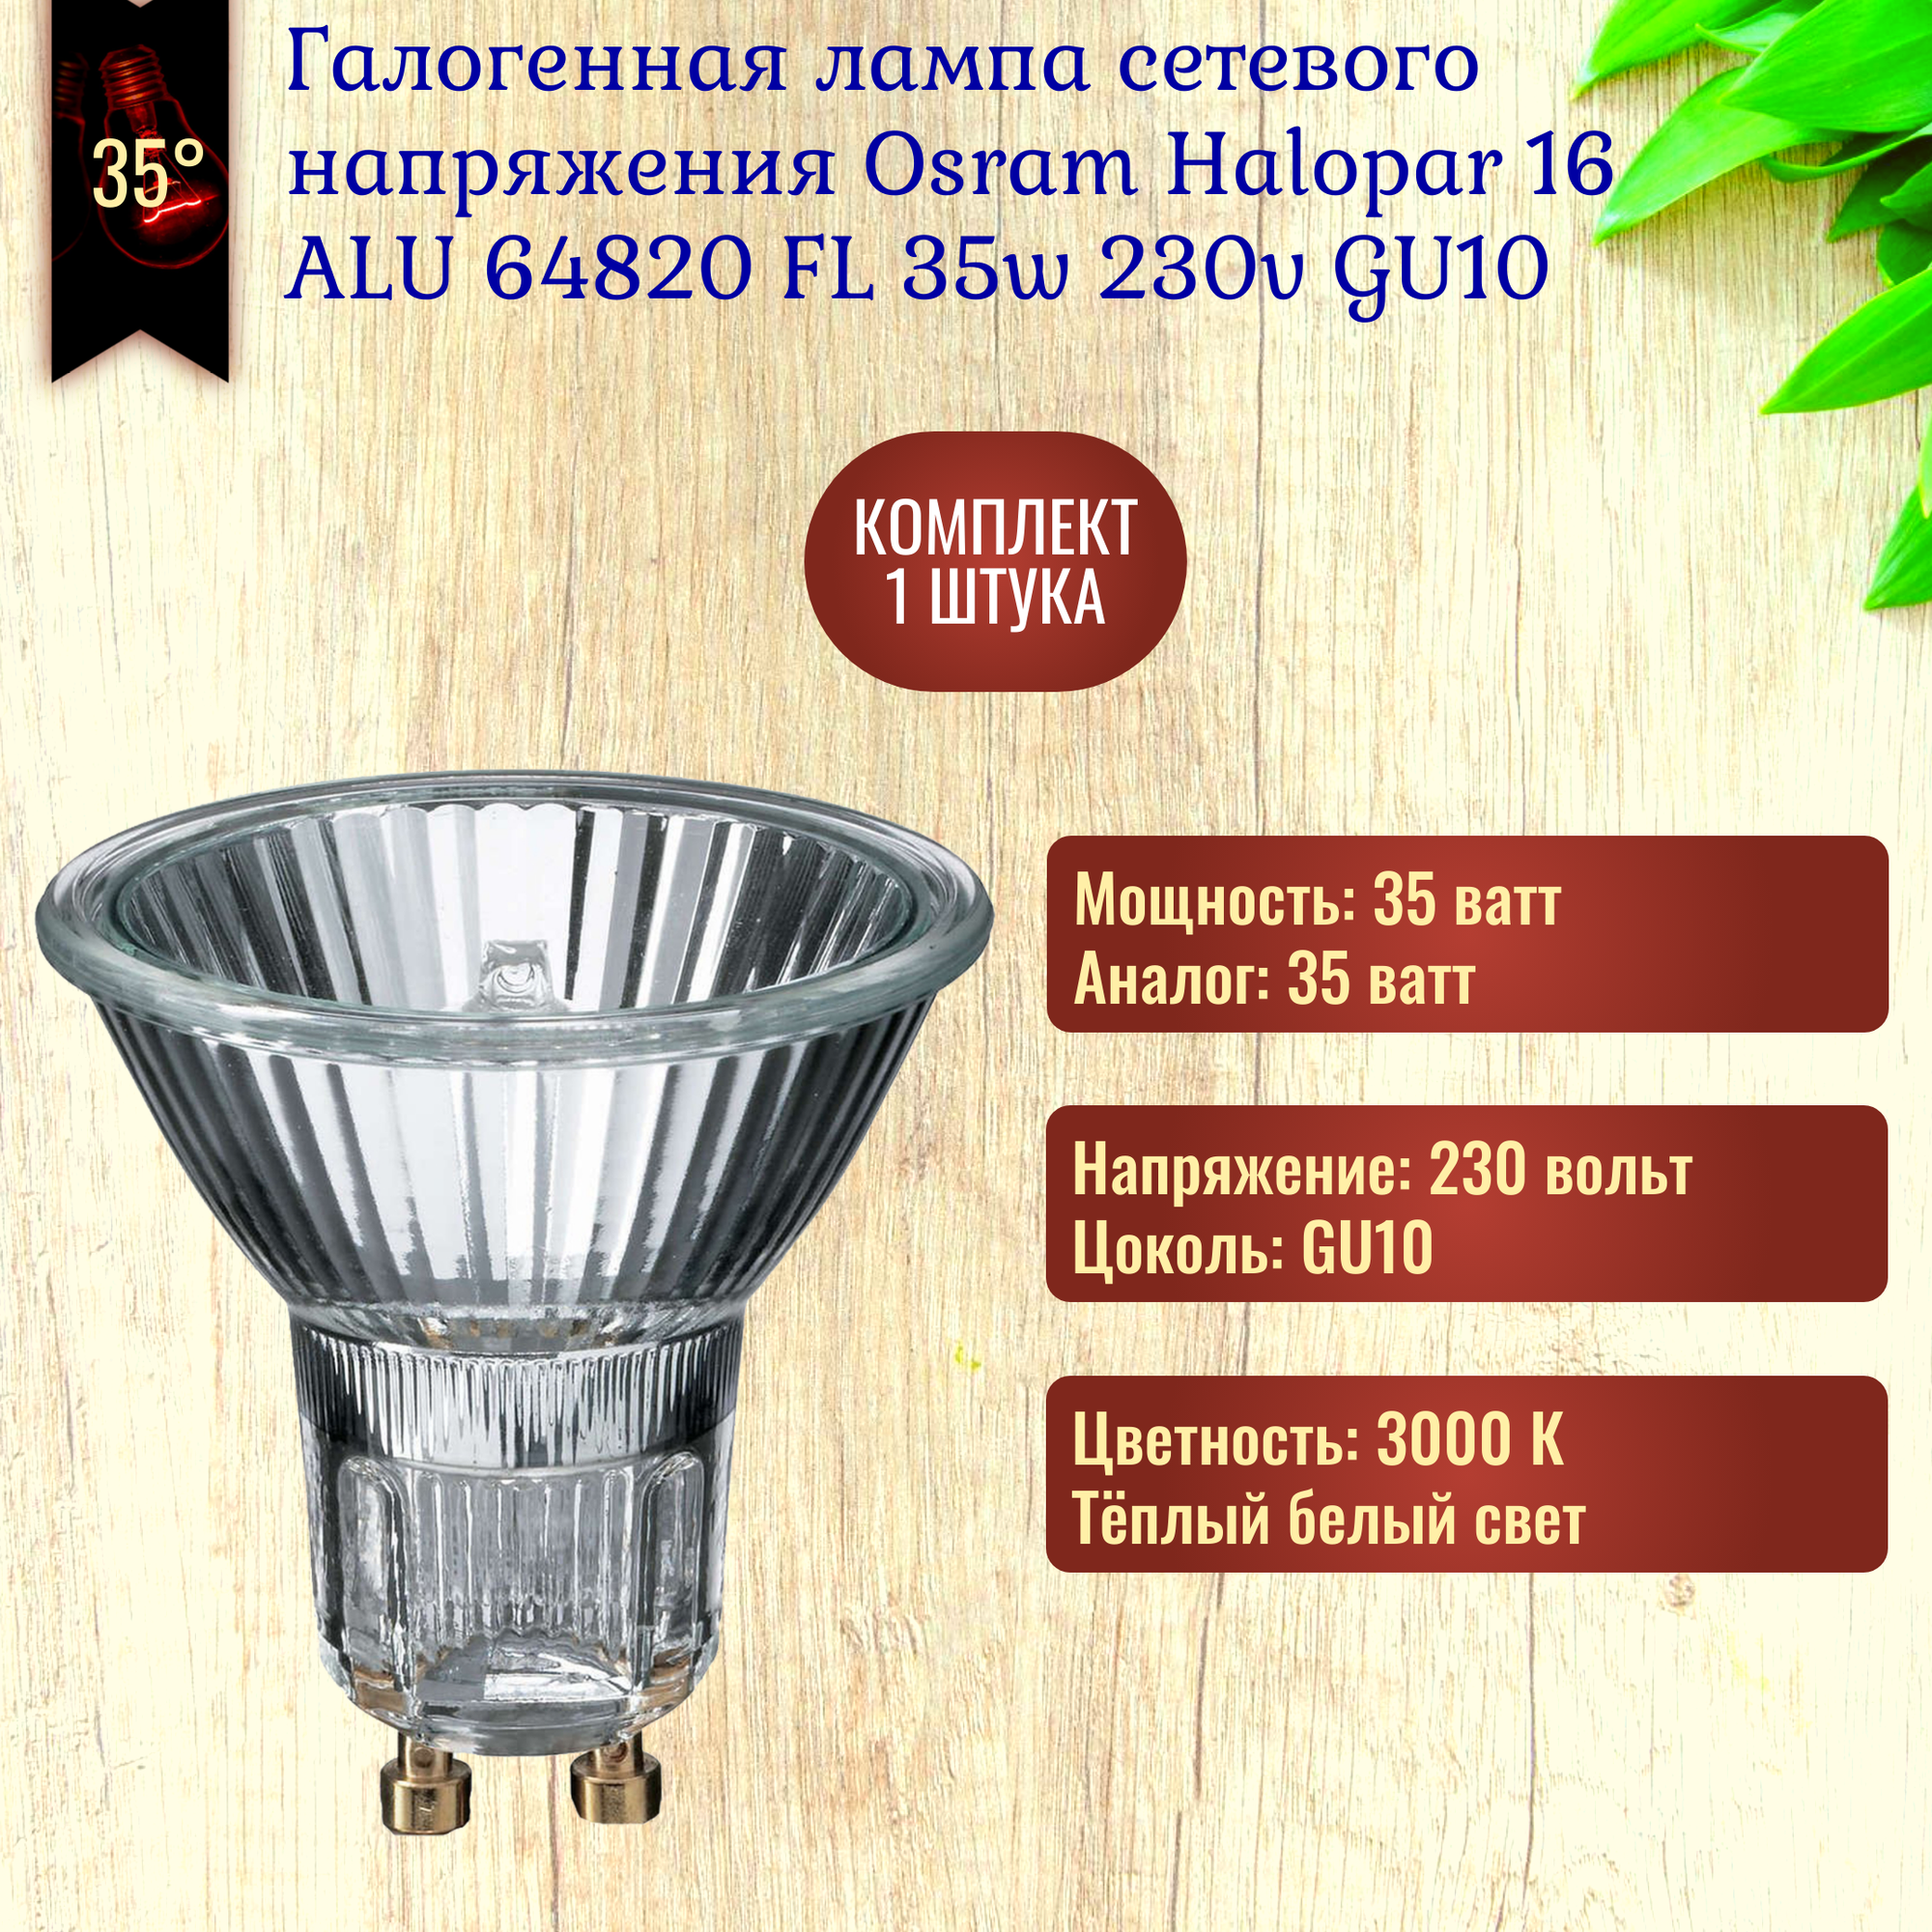 Лампочка Osram Halopar 16 ALU 64820 FL 35w 230v GU10 галогенная теплый белый свет